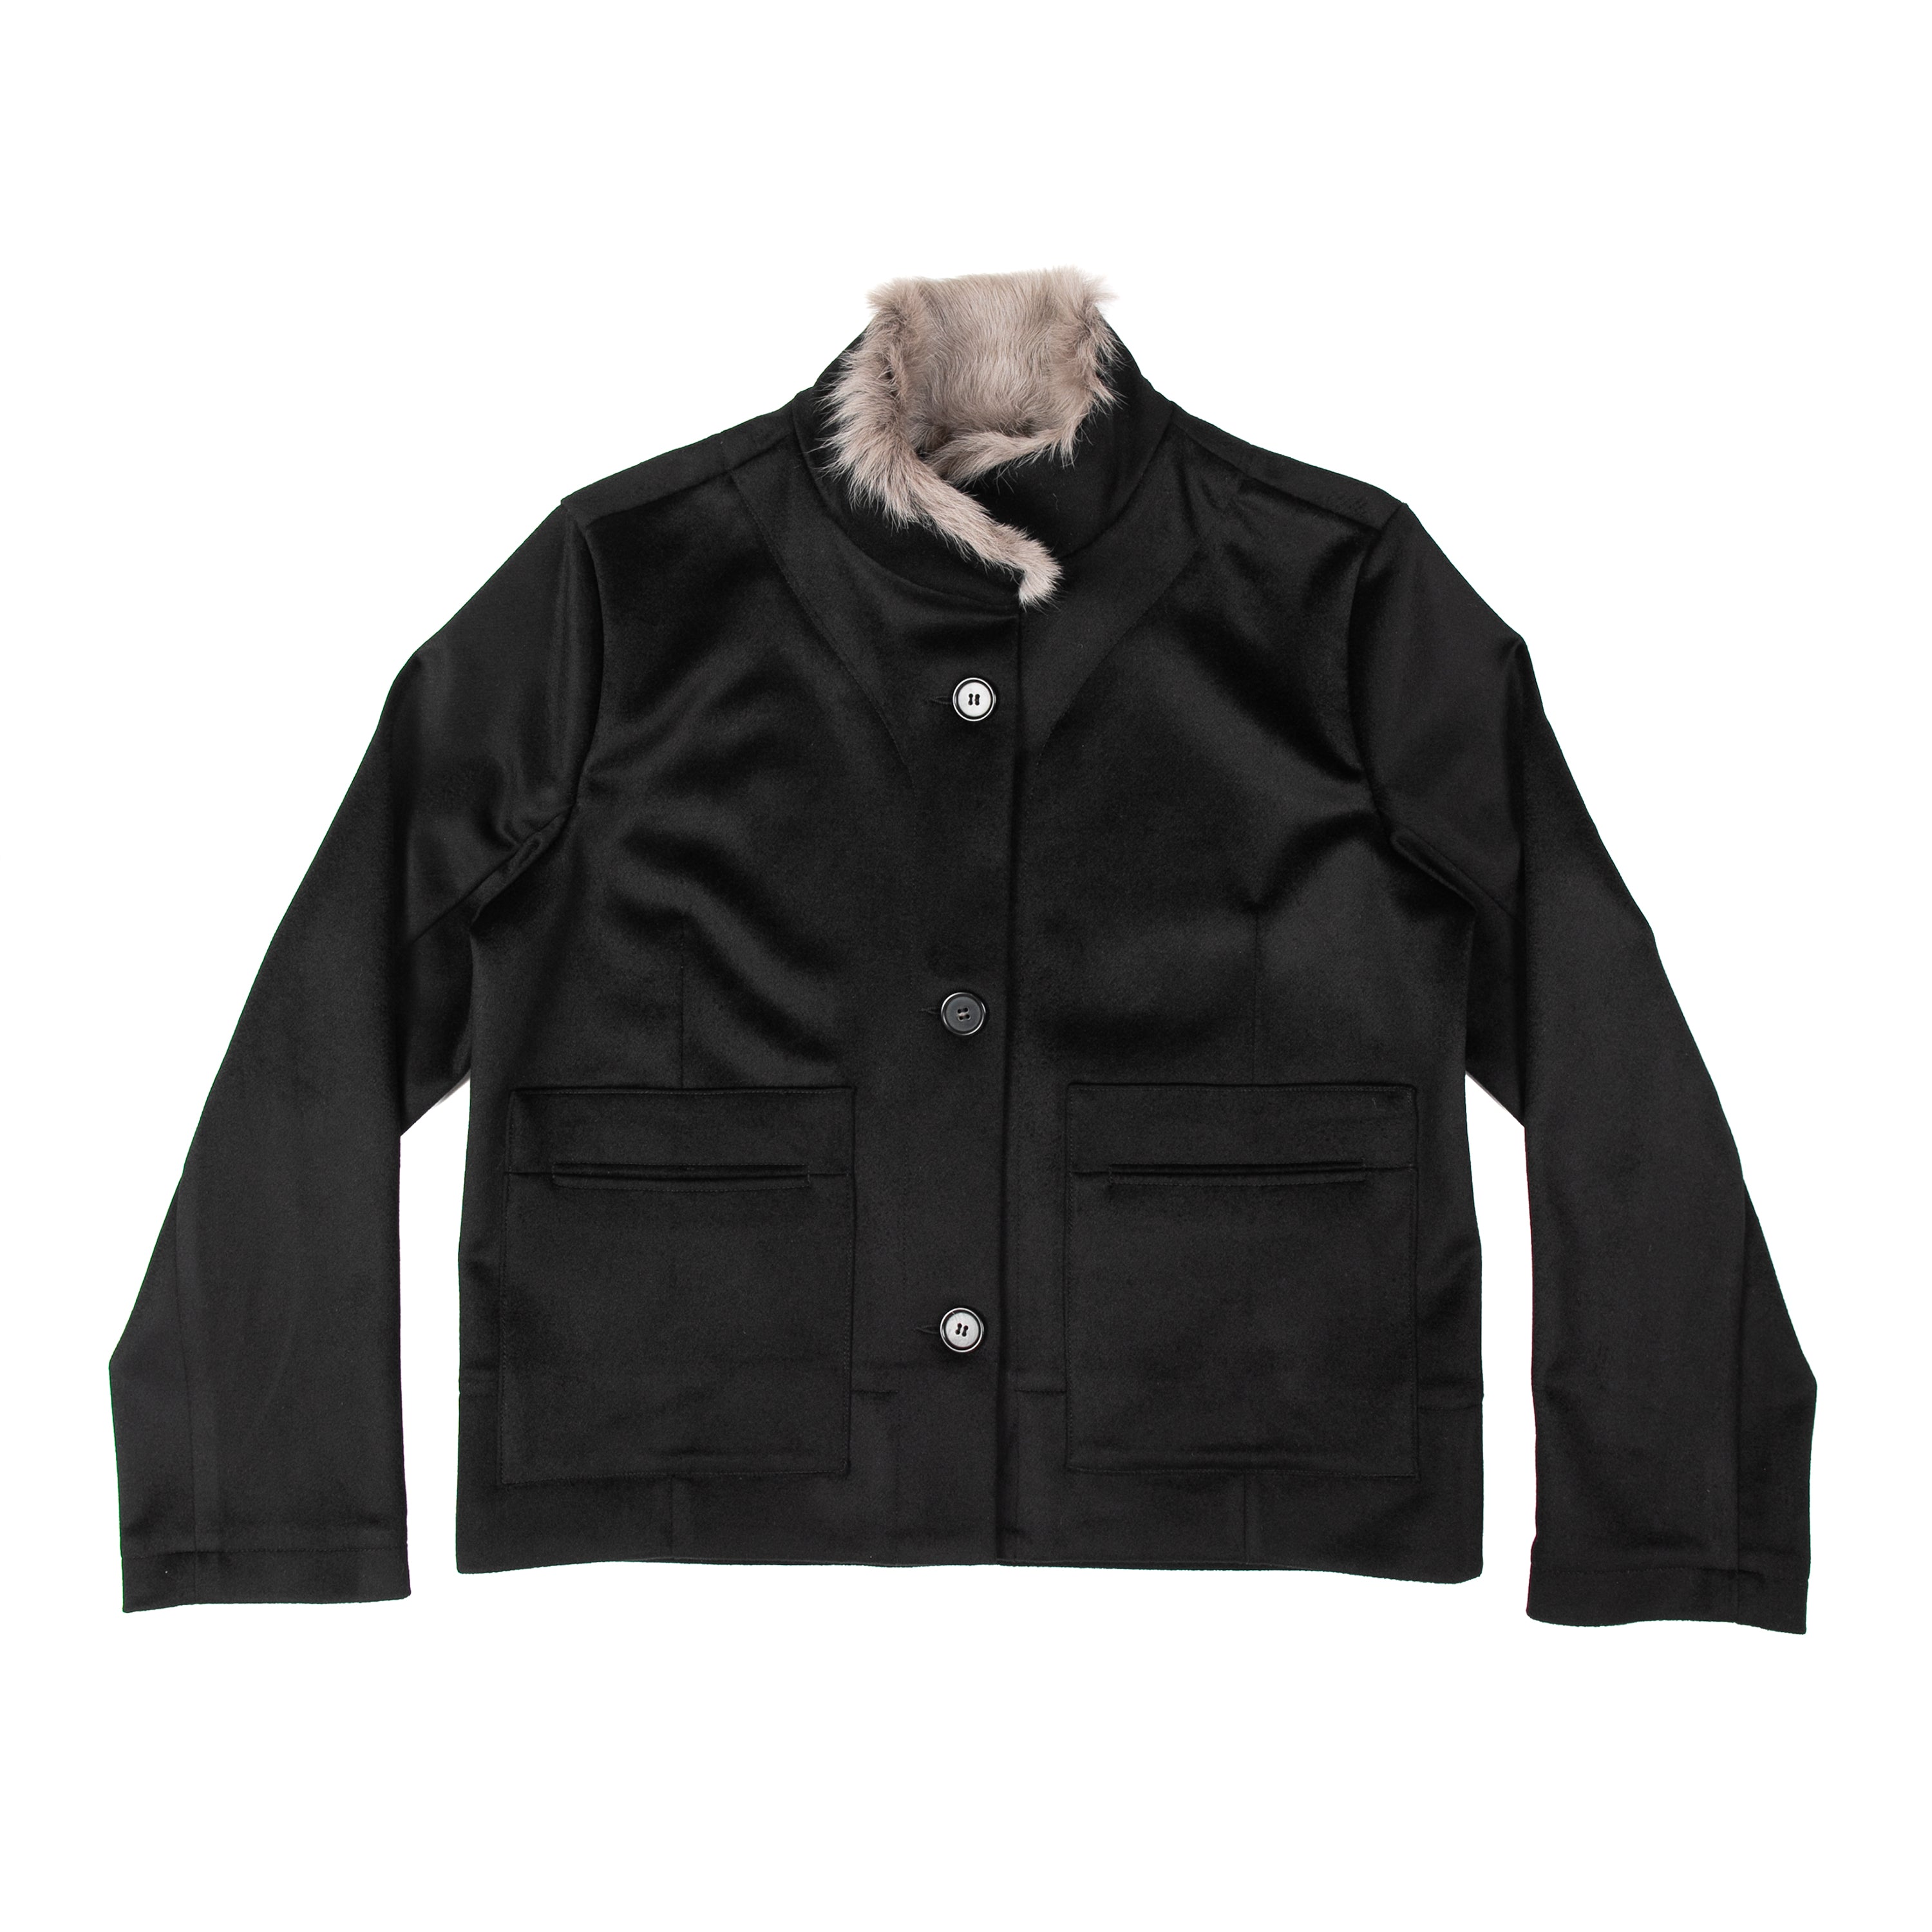 Work Jacket Brushed Wool Black - PREORDER